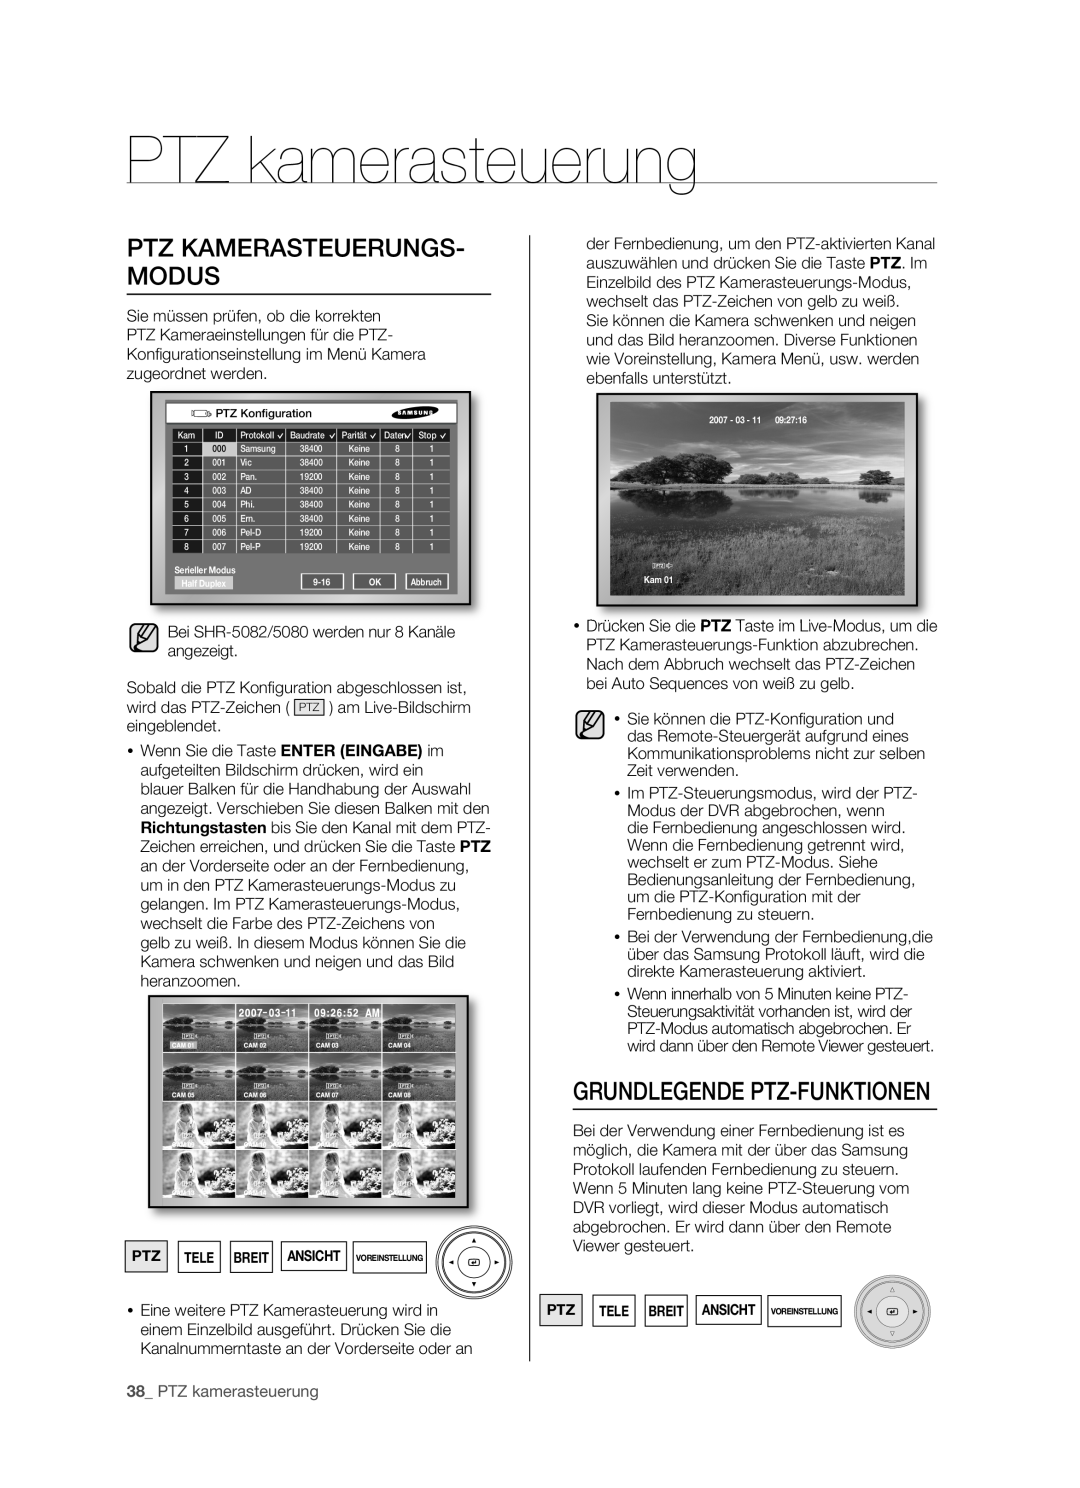 Samsung SHR-5082P/XEG, SHR-5160P manual PTZ kamerasteuerung, Ptz Kamerasteuerungs- Modus, Grundlegende Ptz-Funktionen,  D 